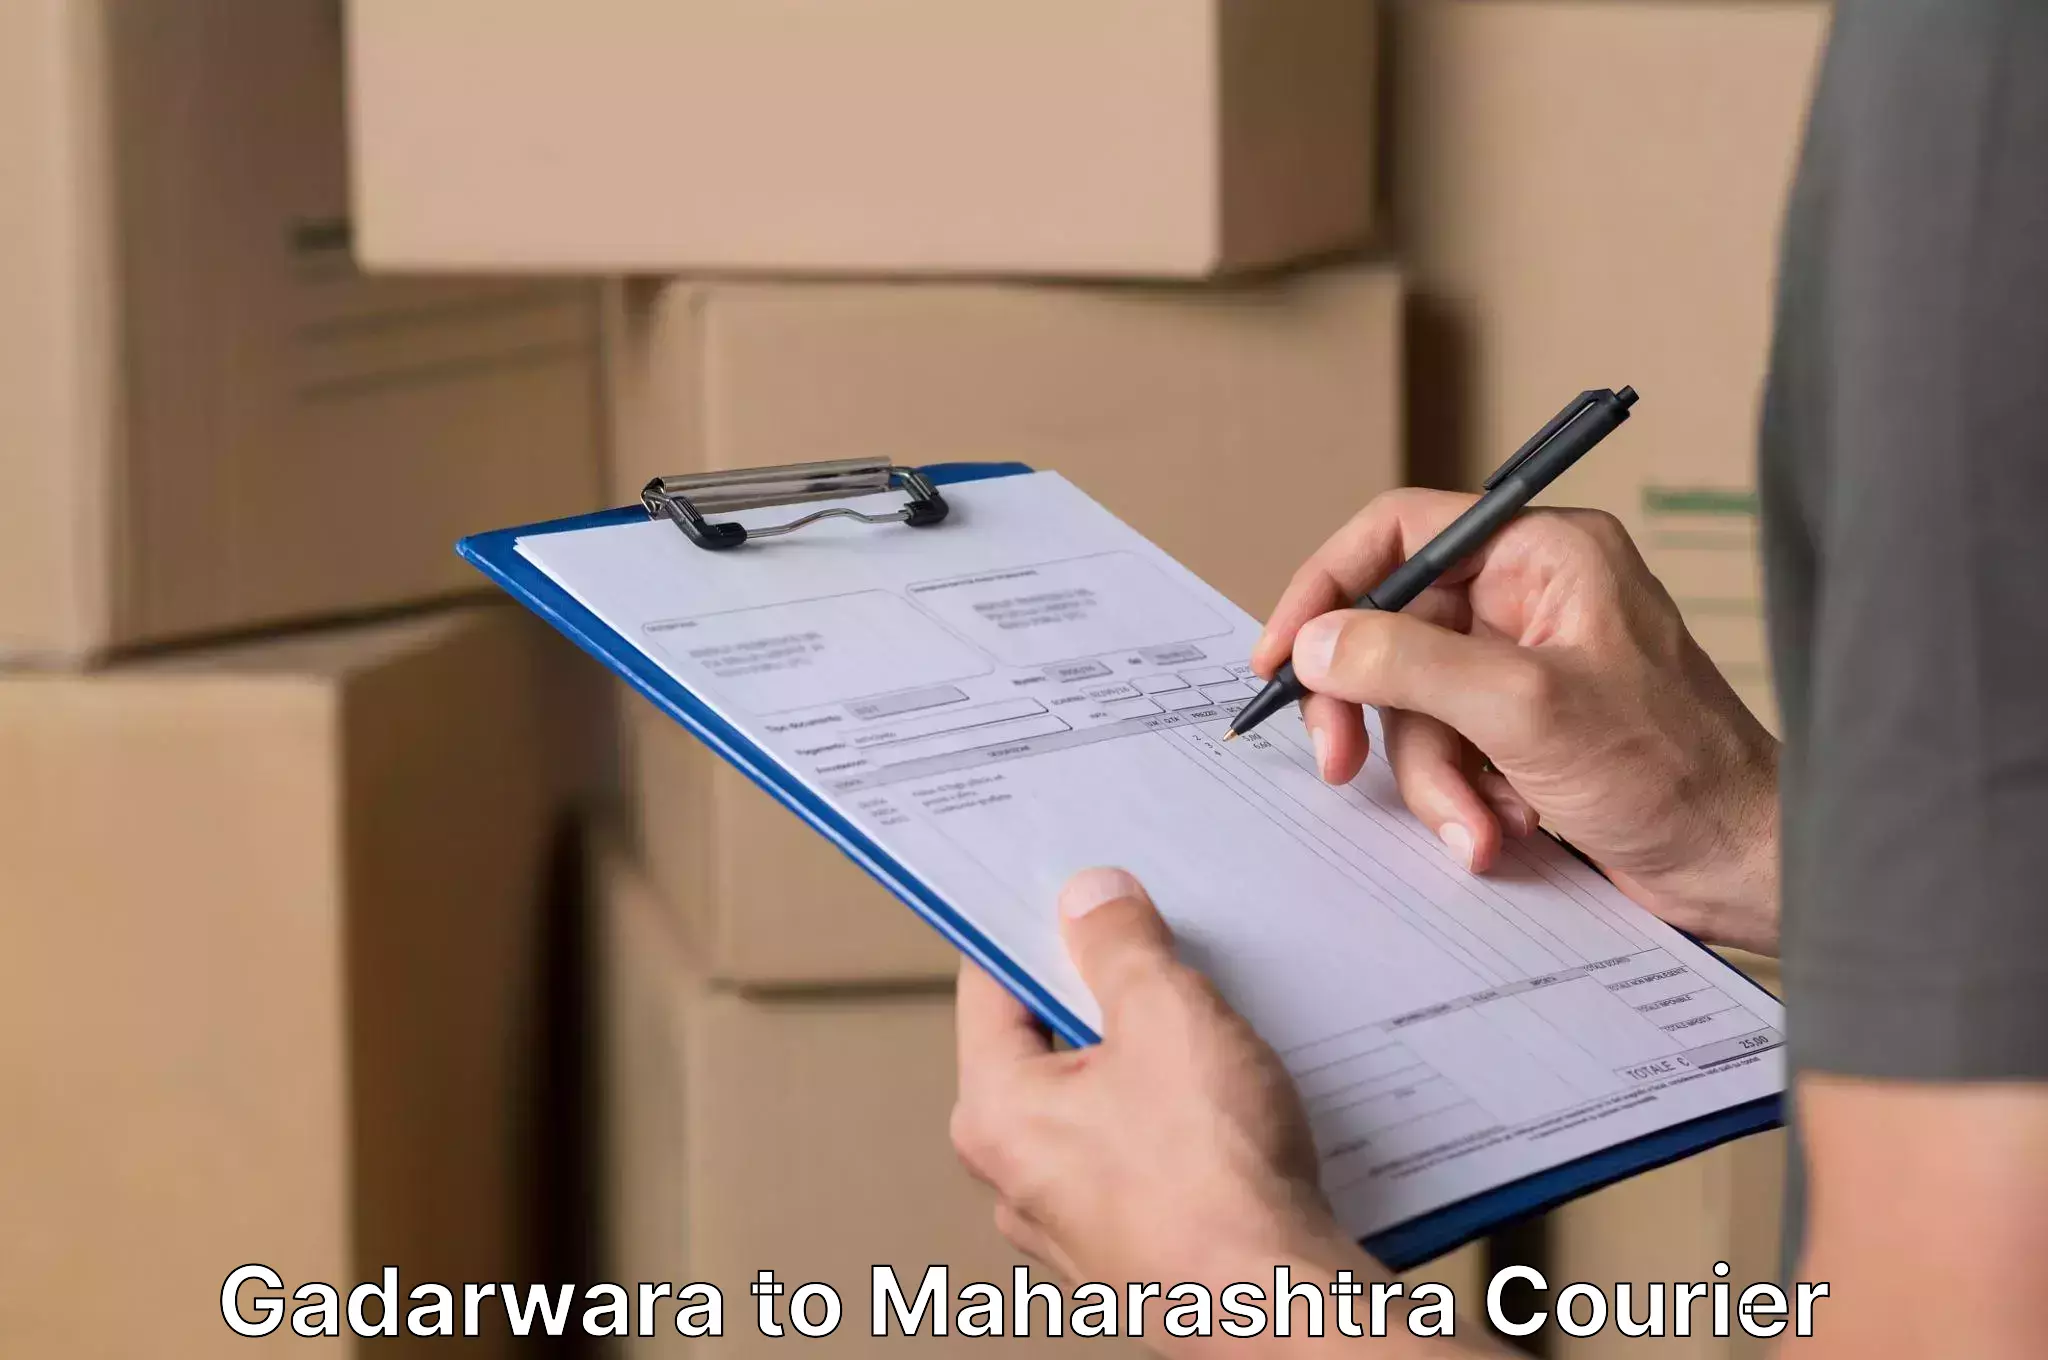 Professional packing services in Gadarwara to Bhiwandi